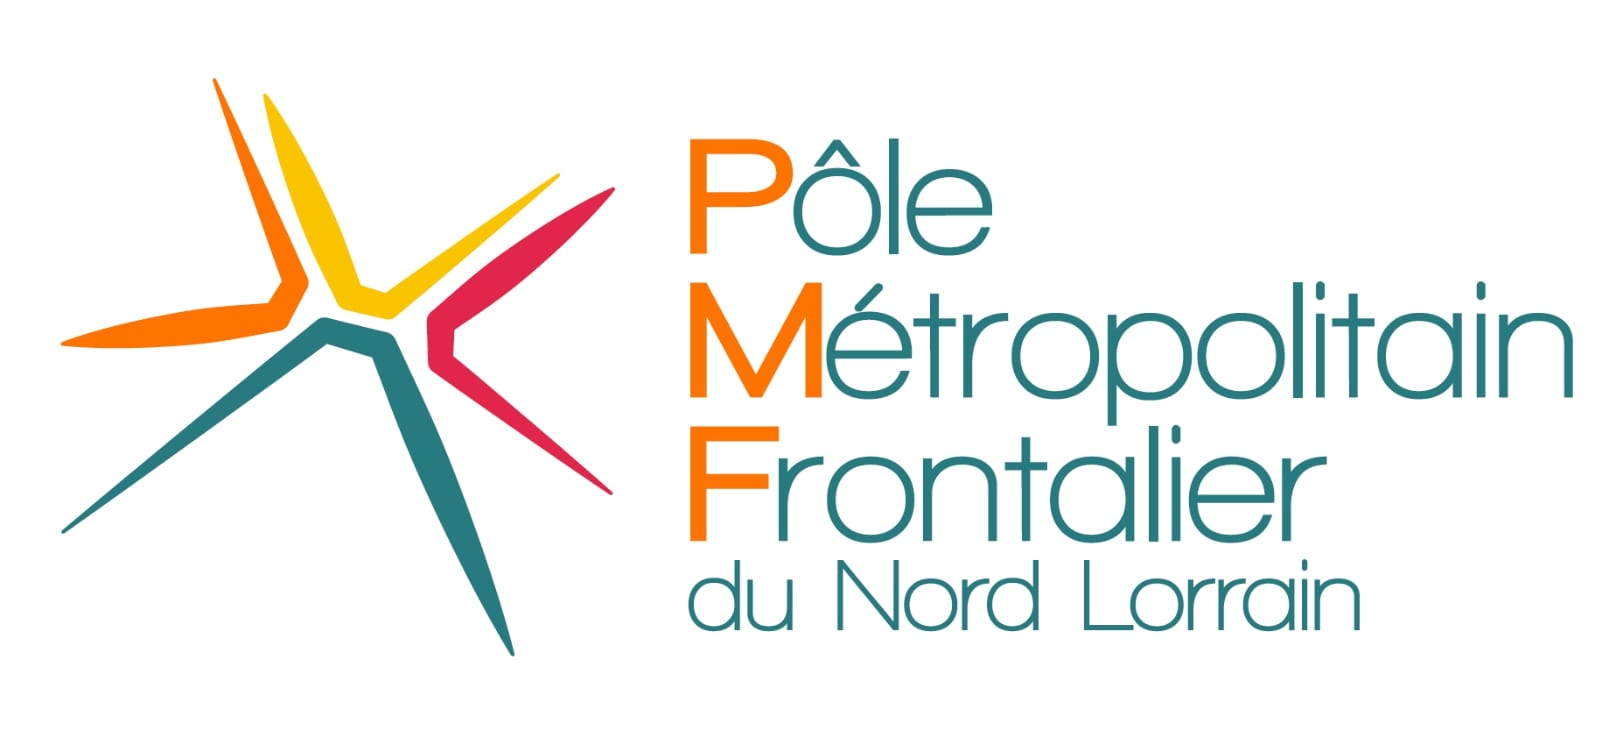 Logo du Pôle Métropolitain Frontalier du Nord Lorrain, un syndicat mixte créé le 1er janvier 2019 par 8 communautés de communes ou d'agglomération, fondatrices.